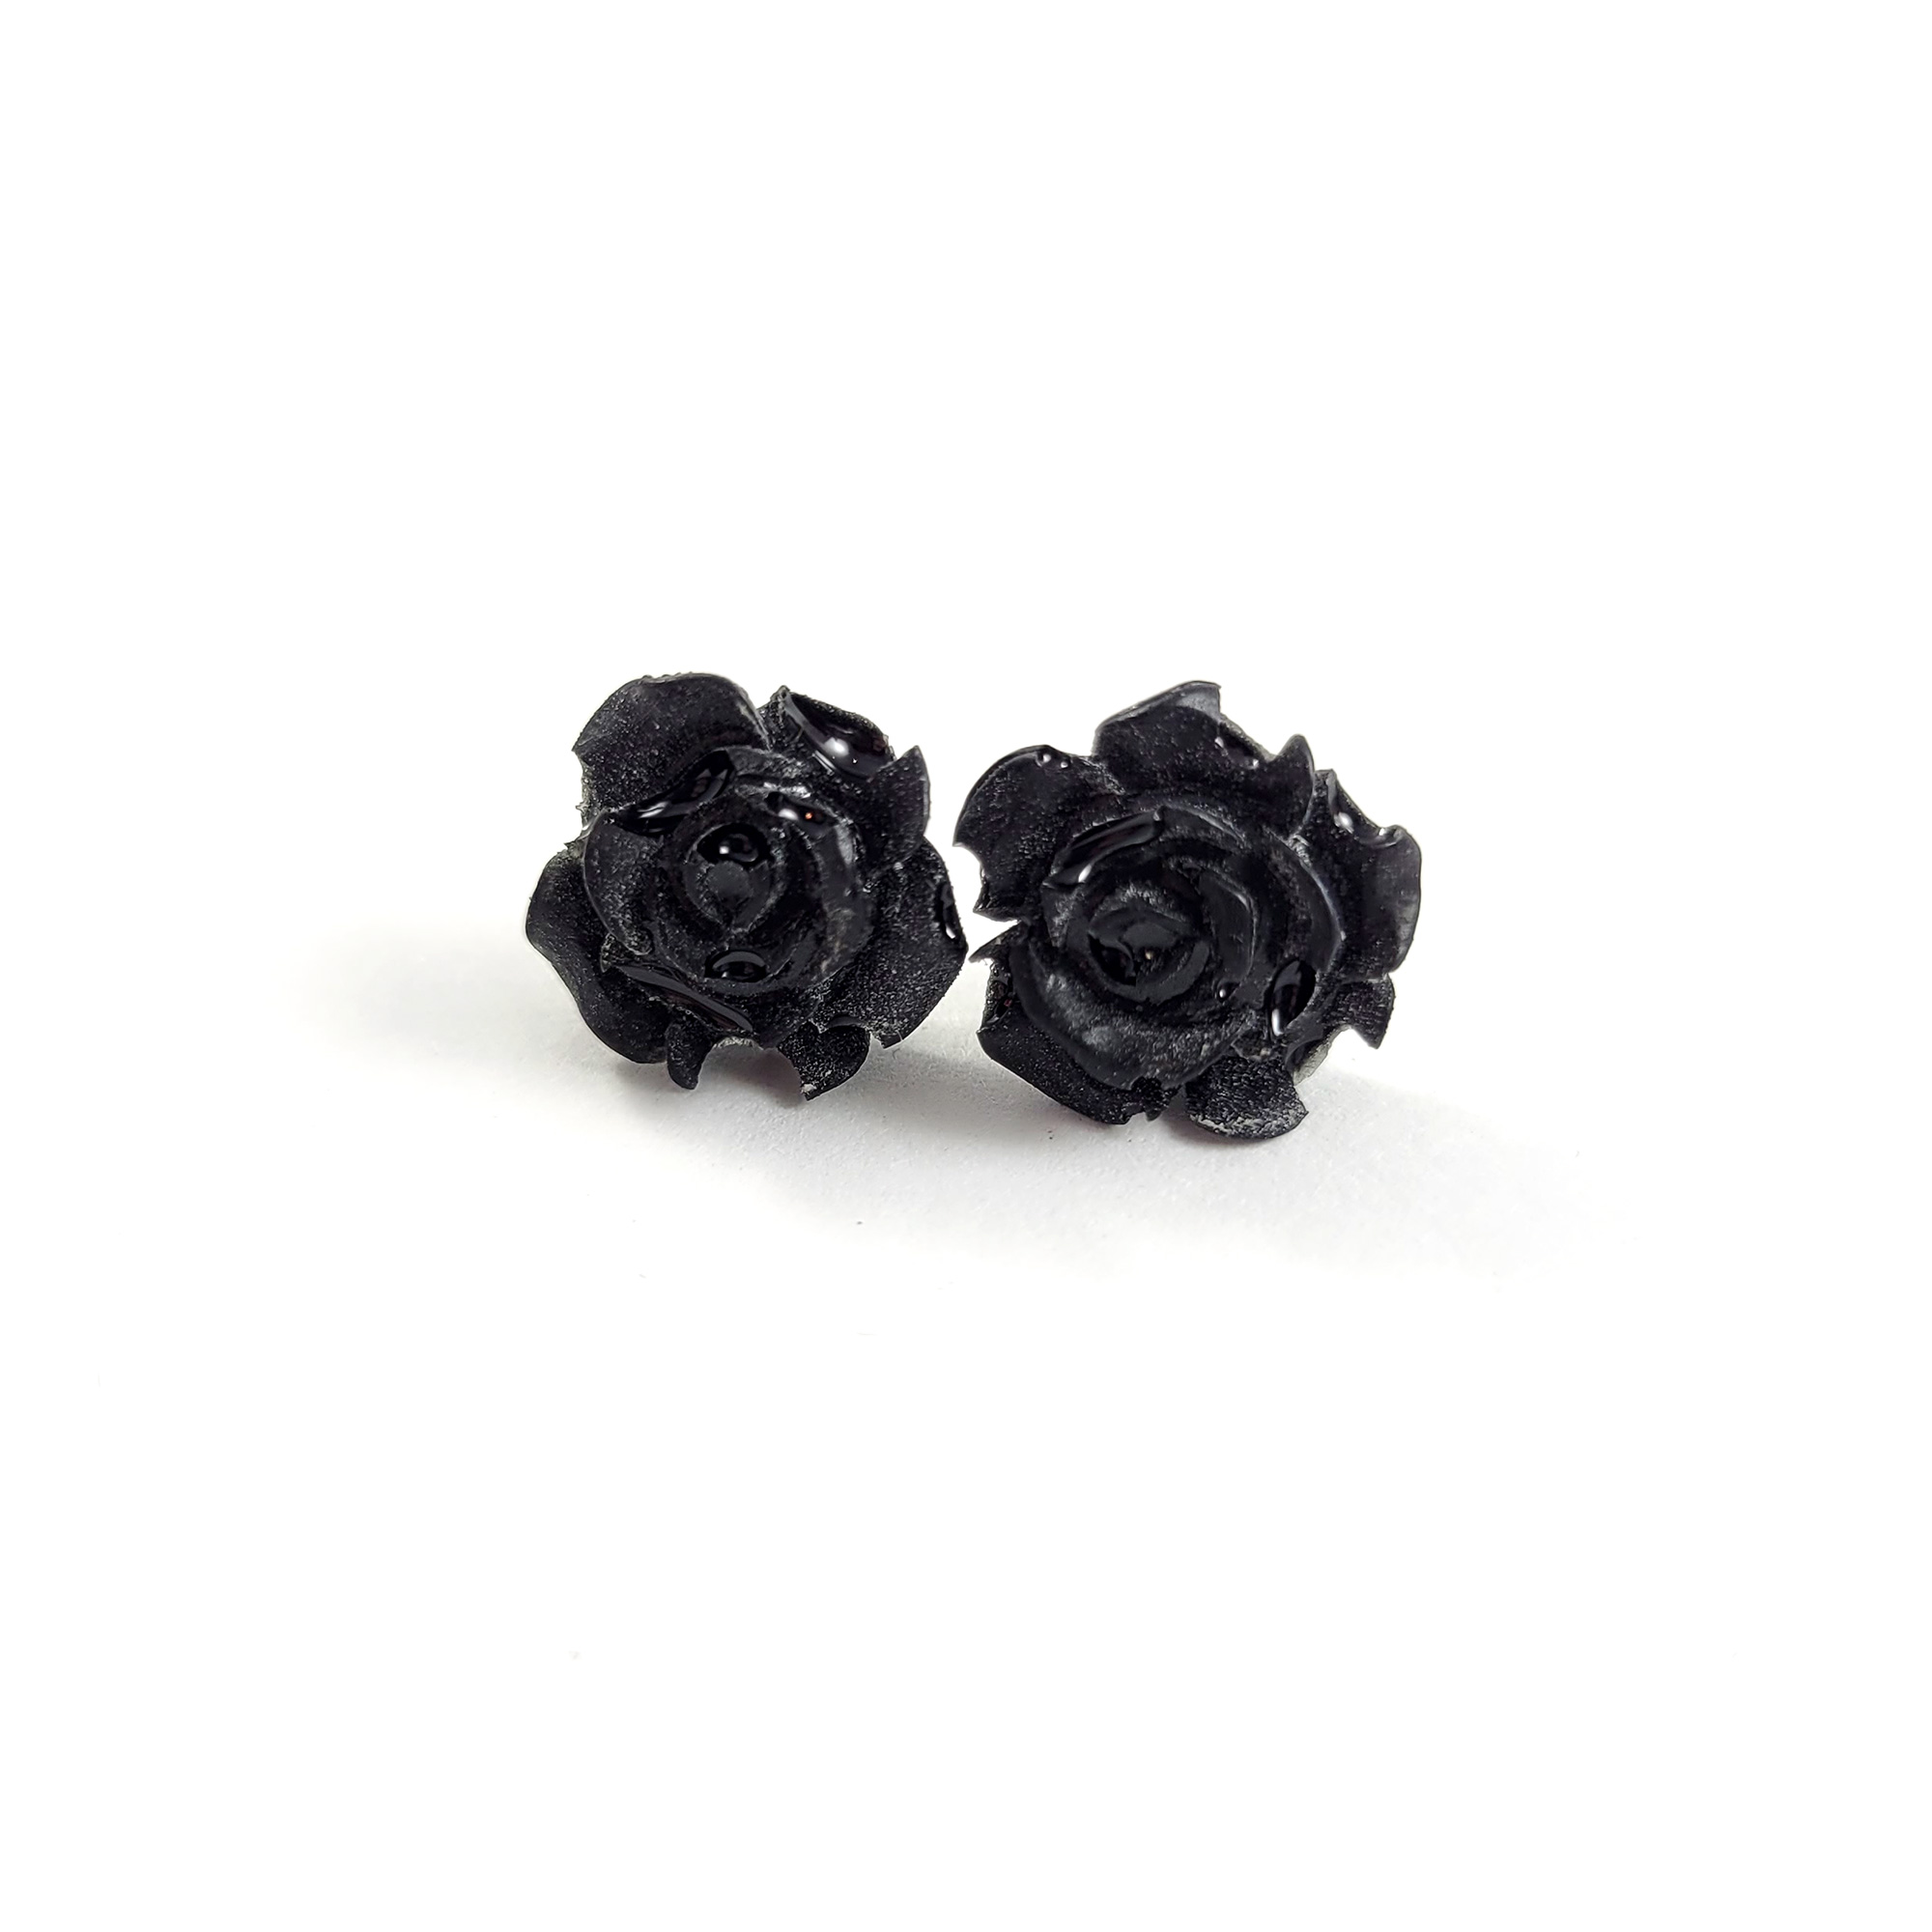 Kawaii Rose Earrings in Black